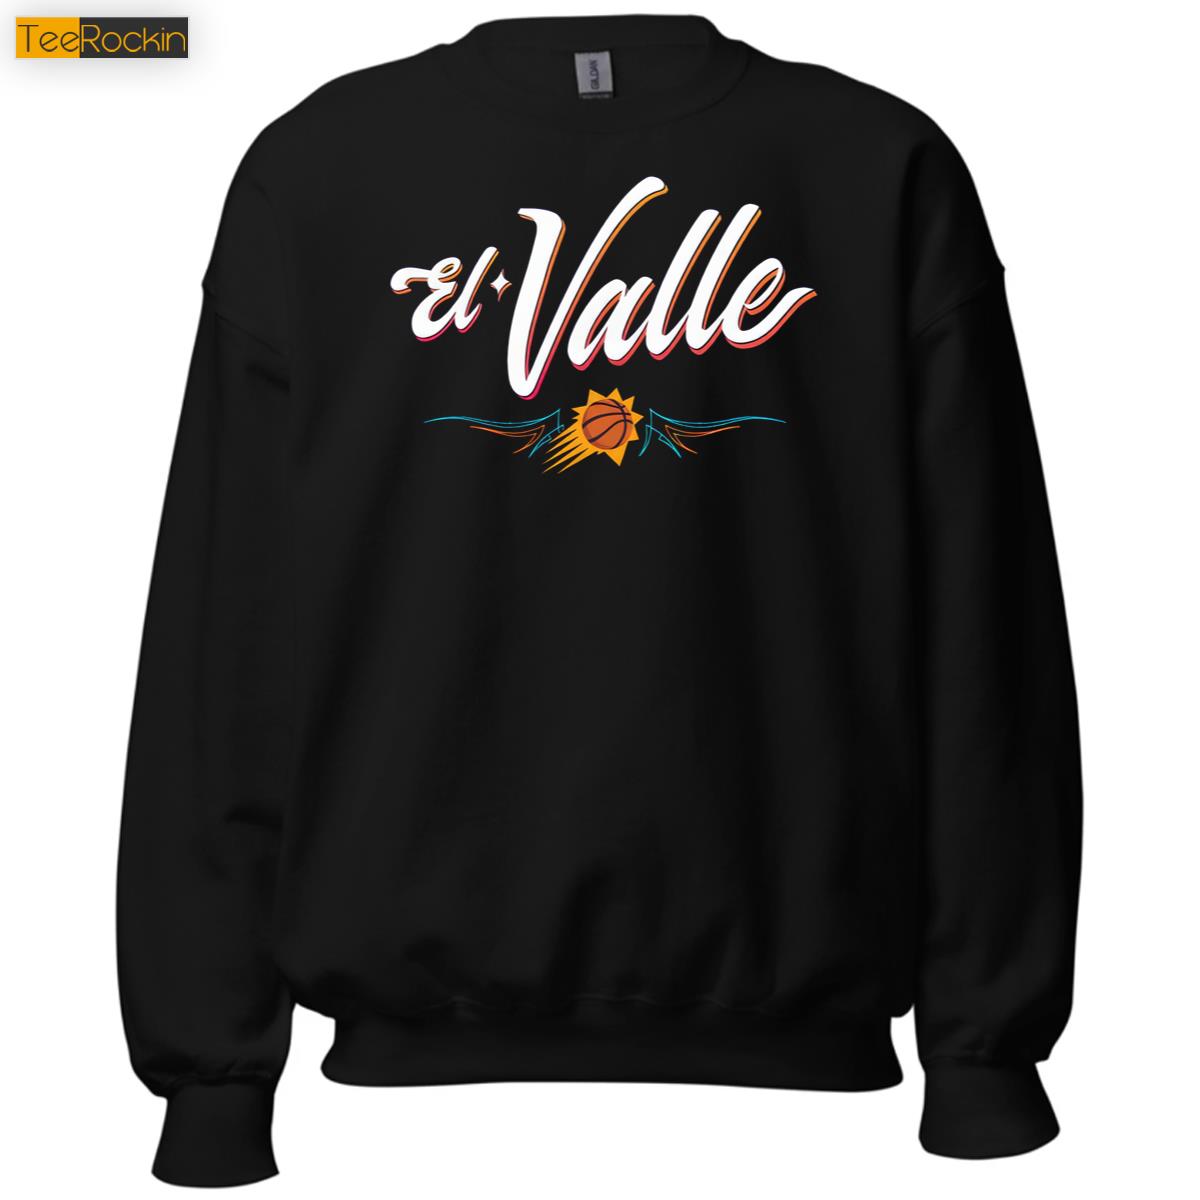 El Valle Suns Vintage Sweatshirt